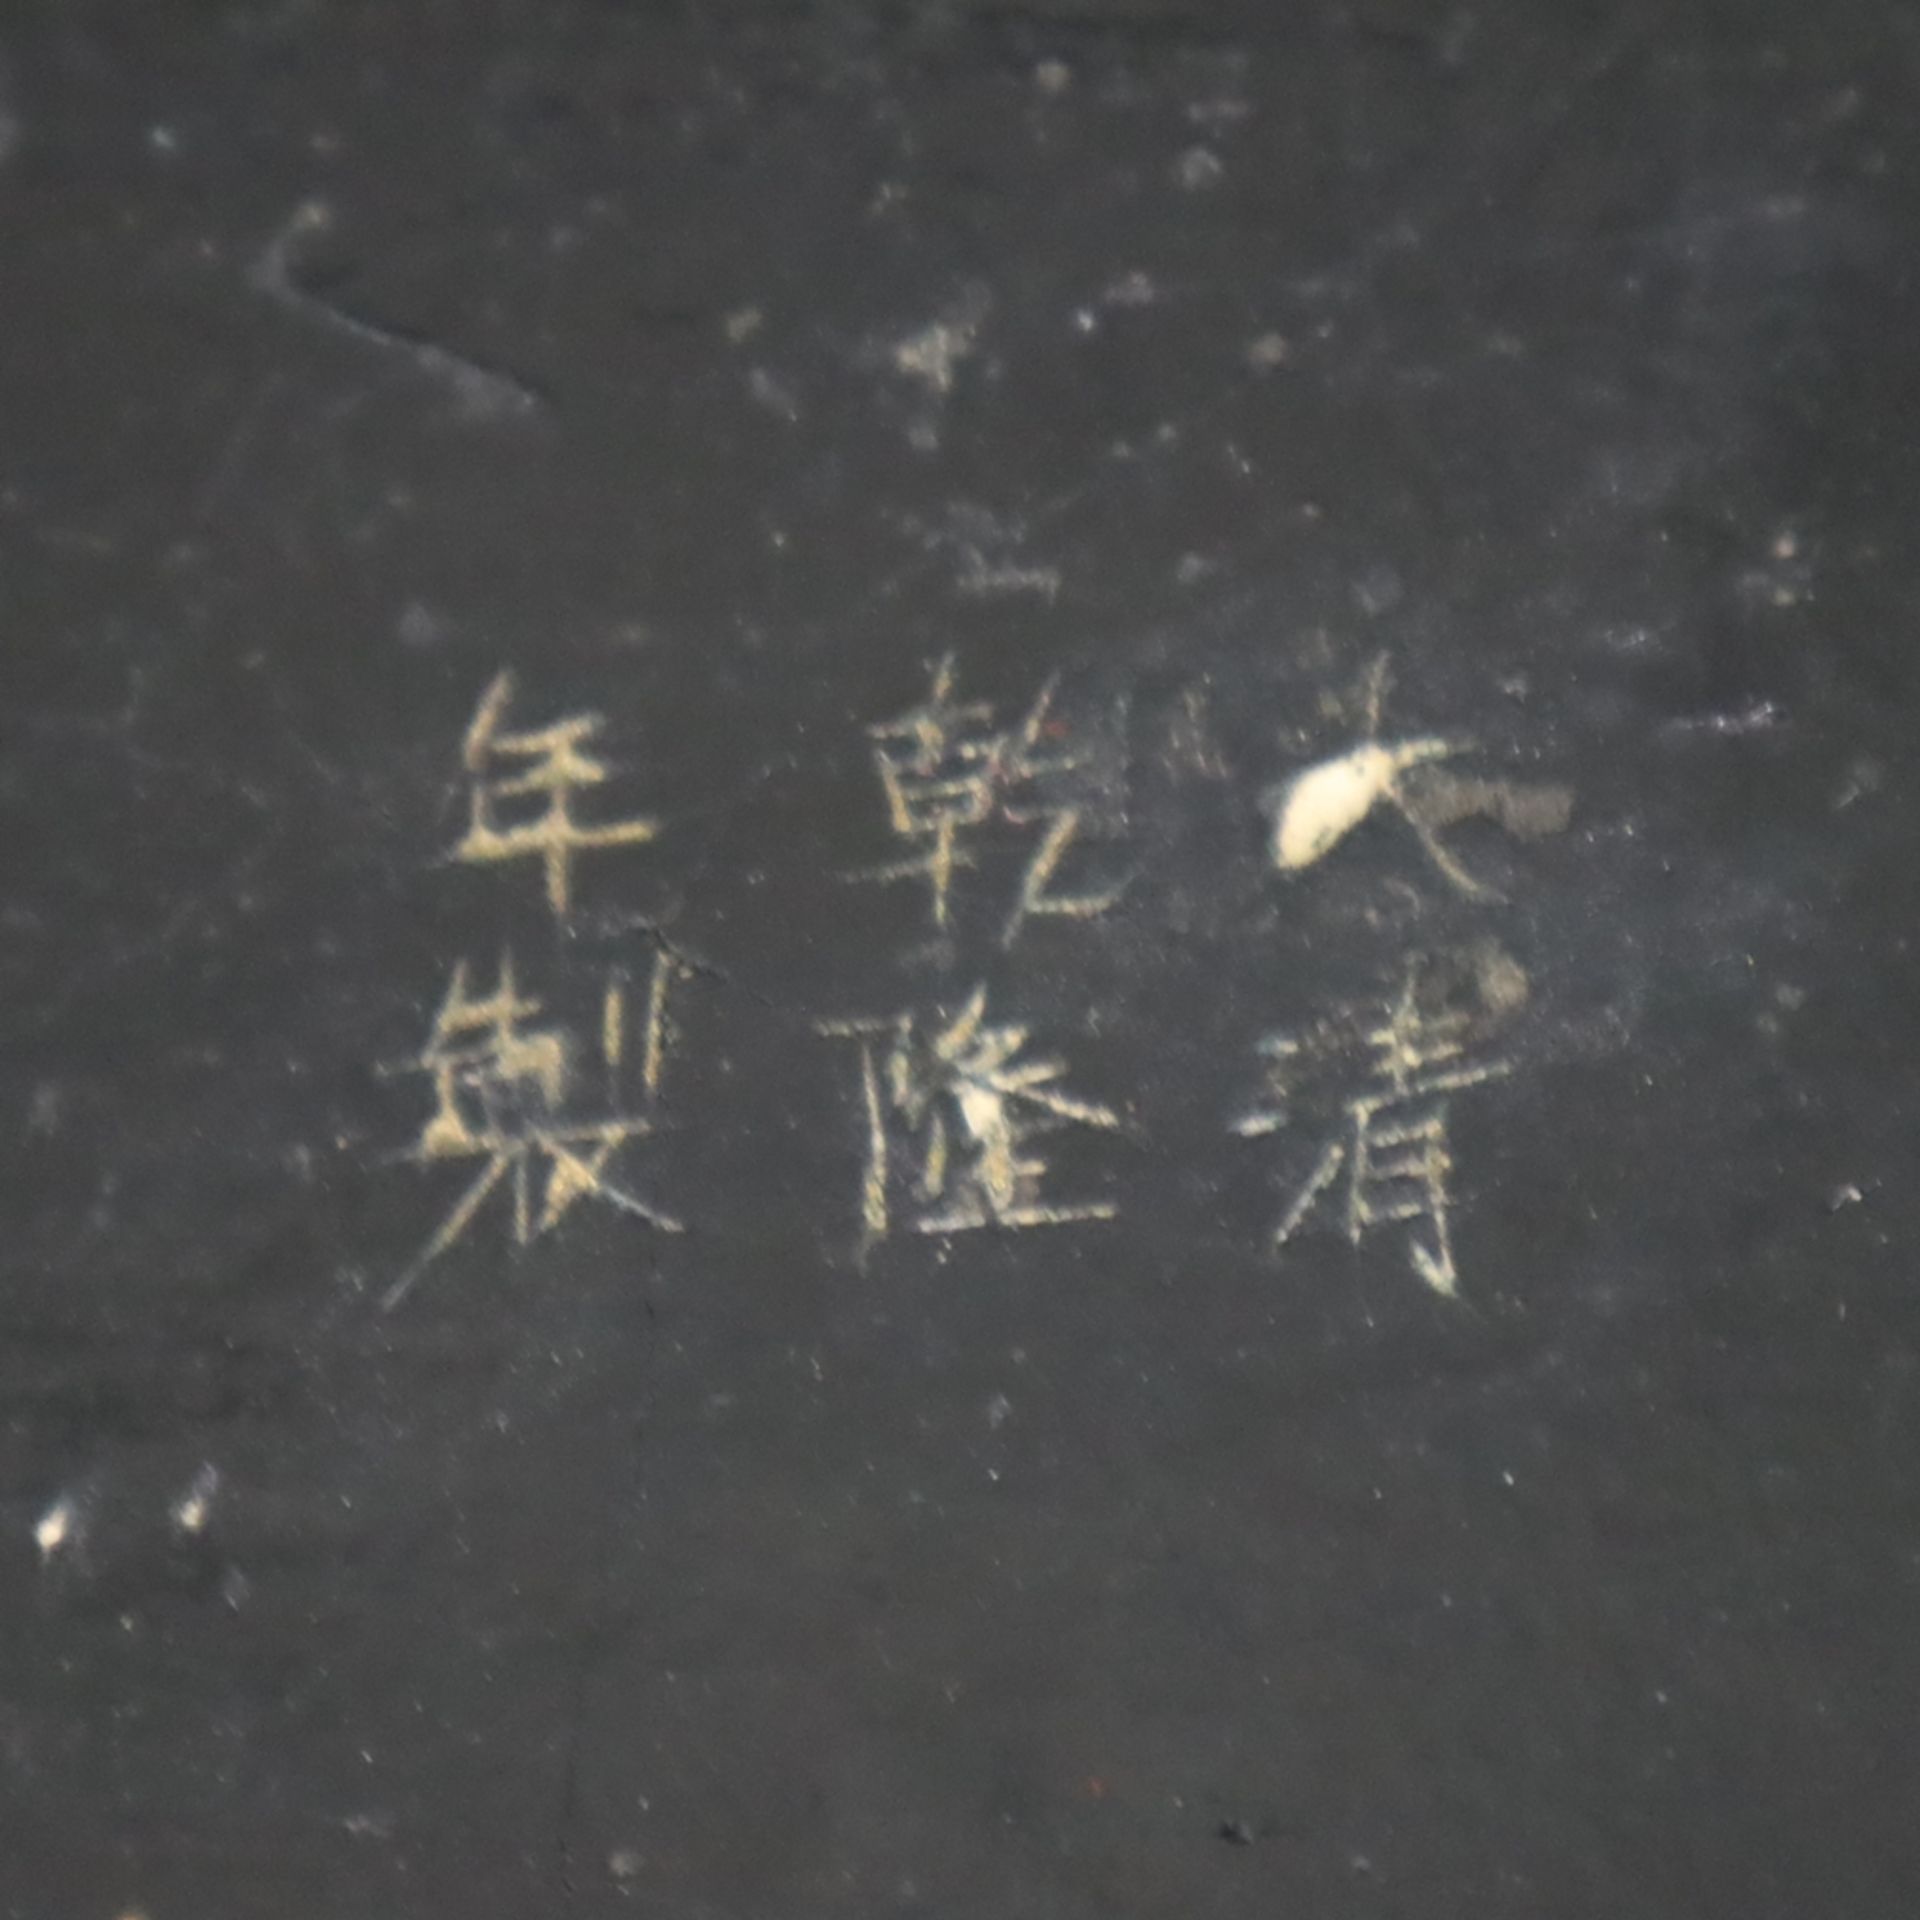 Schnitzlack-Deckeldose - China, Qing-Dynastie, Außenwandung mit rotem Schnitzlack, Unter- und Innen - Image 7 of 7